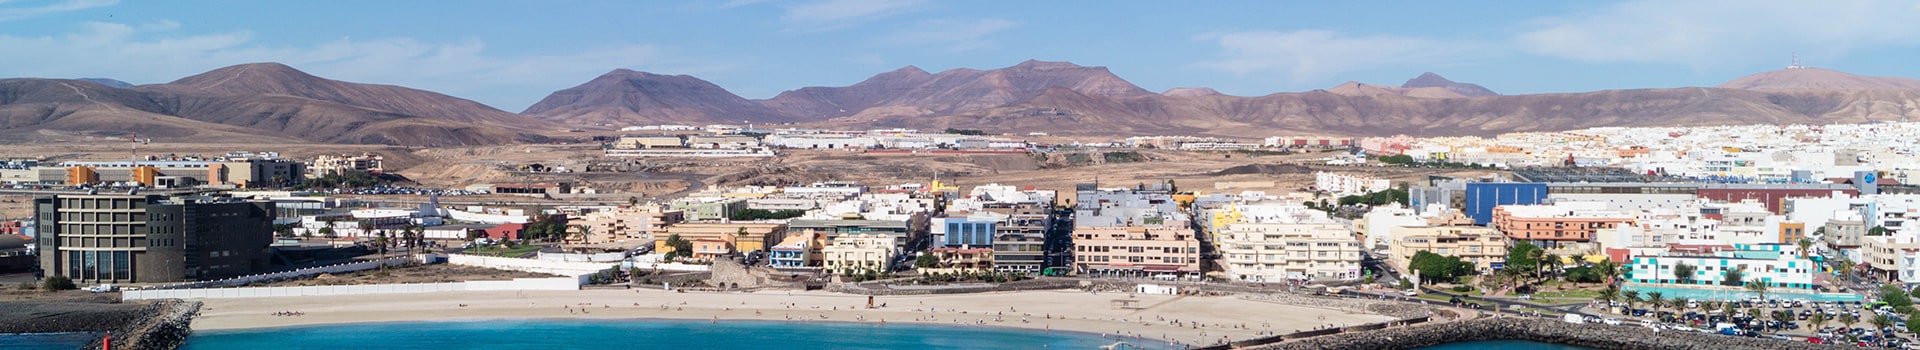 Madrid - Fuerteventura